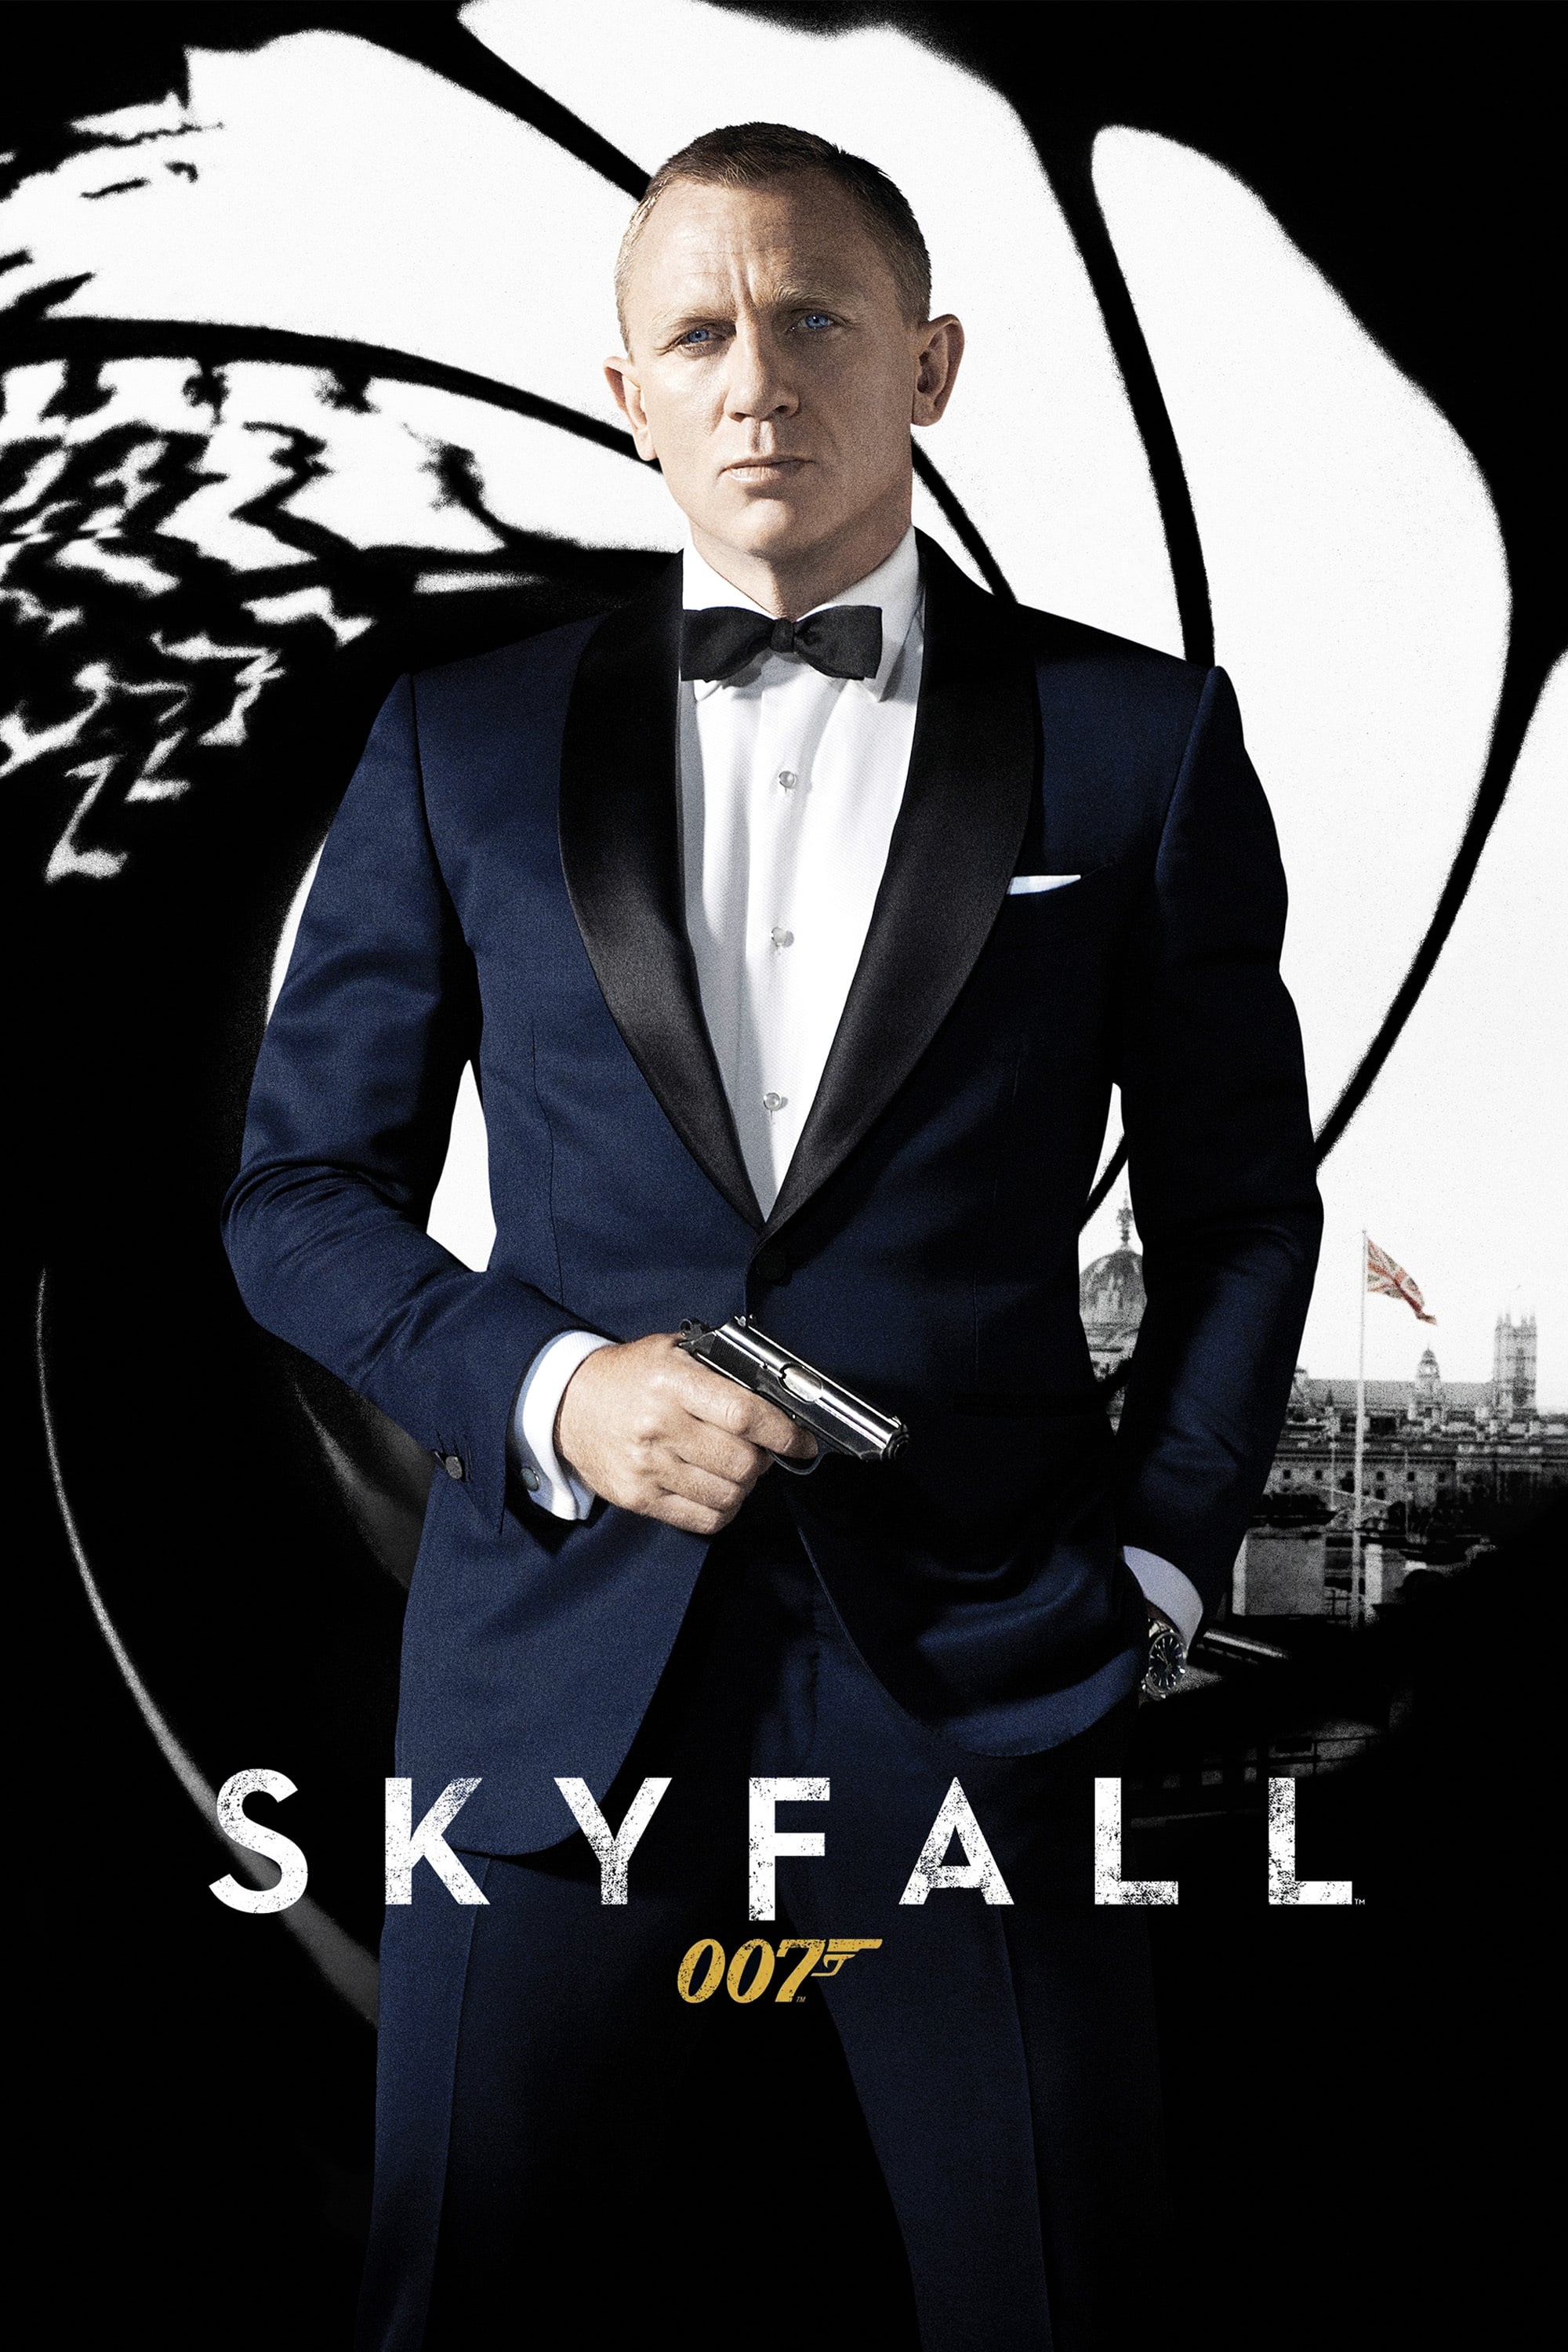 Skyfall movie poster